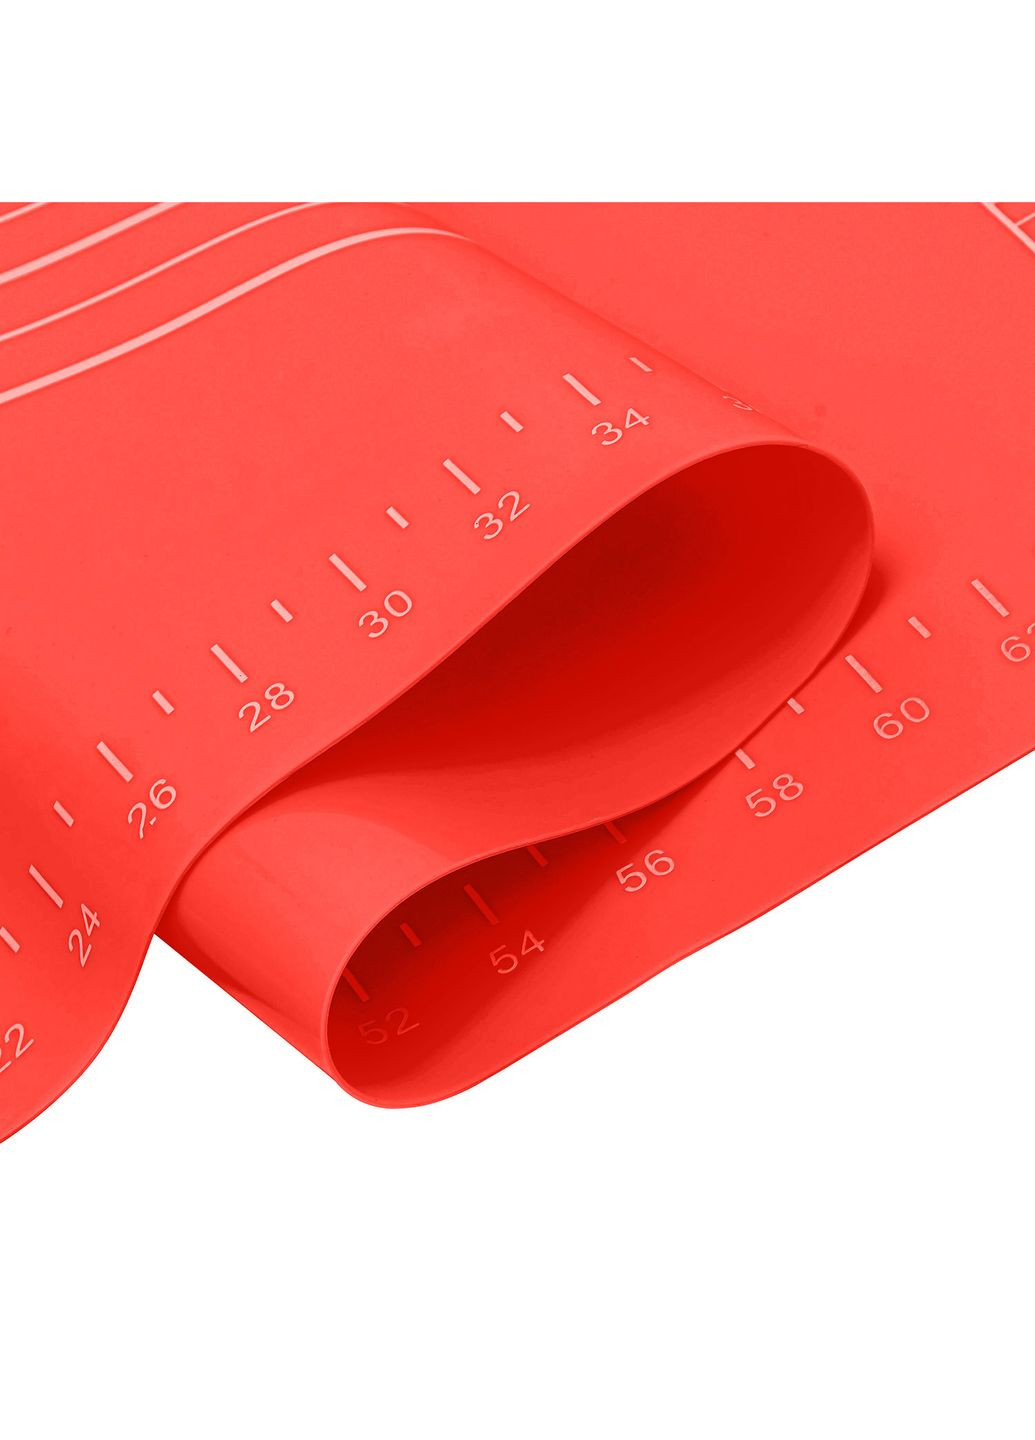 Коврик силиконовый для раскатки теста и выпечки большой 81х61 см Красный A-Plus (262803165)